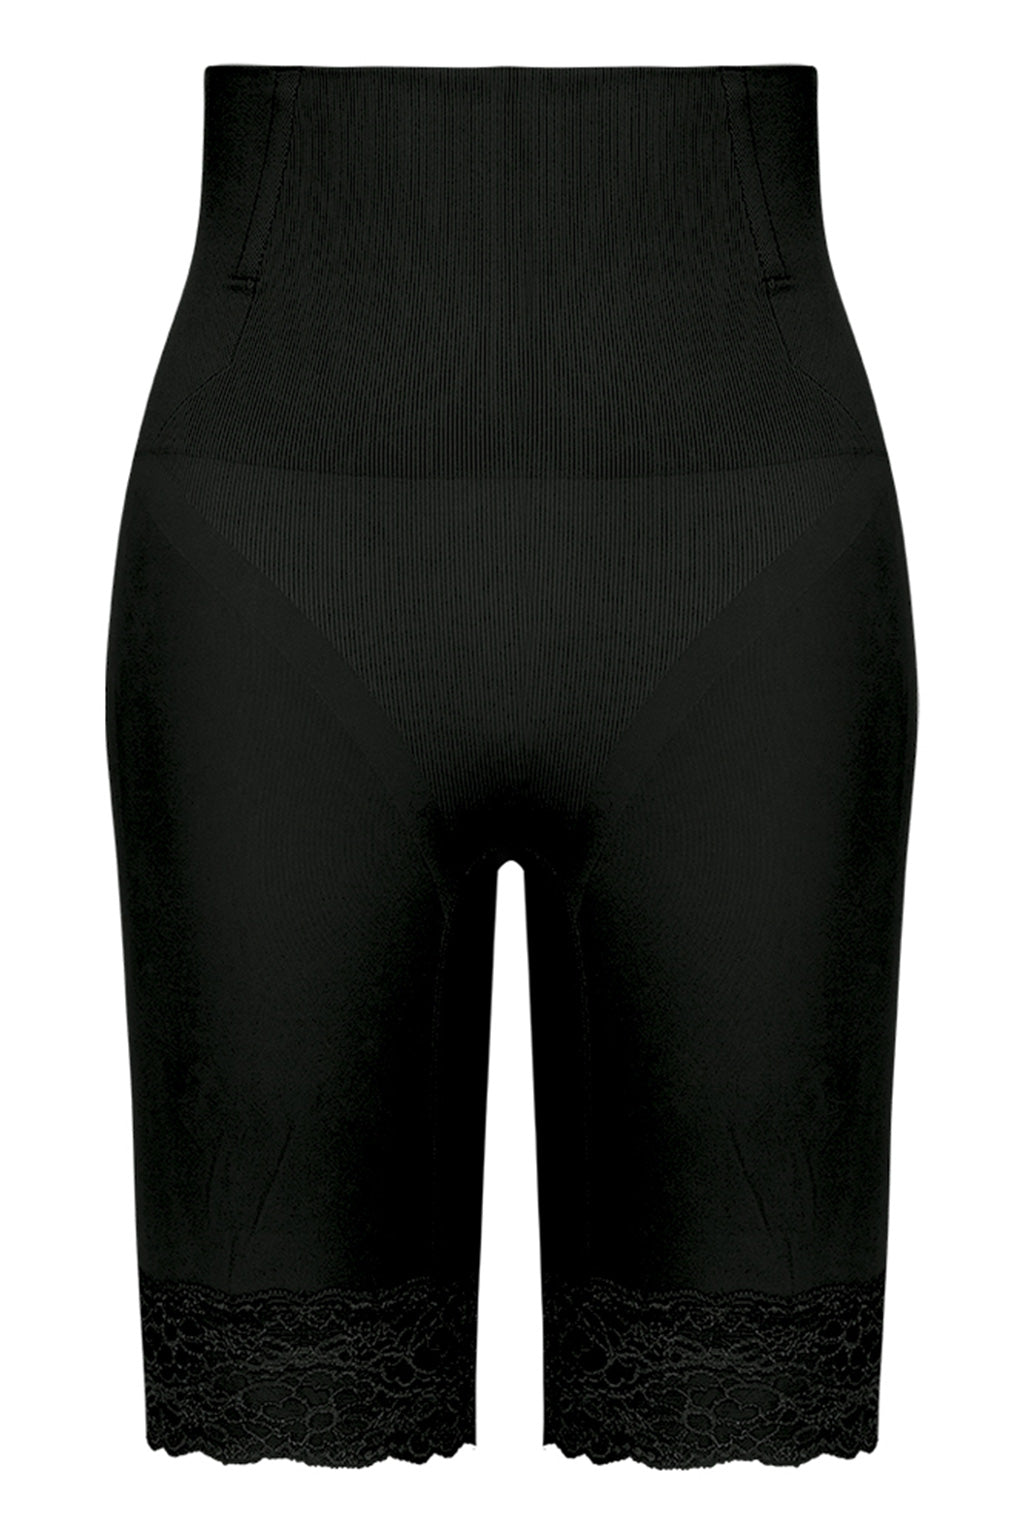 Black Shapewear Shorts - Compression Shorts - High-Rise Shapewear - Lulus